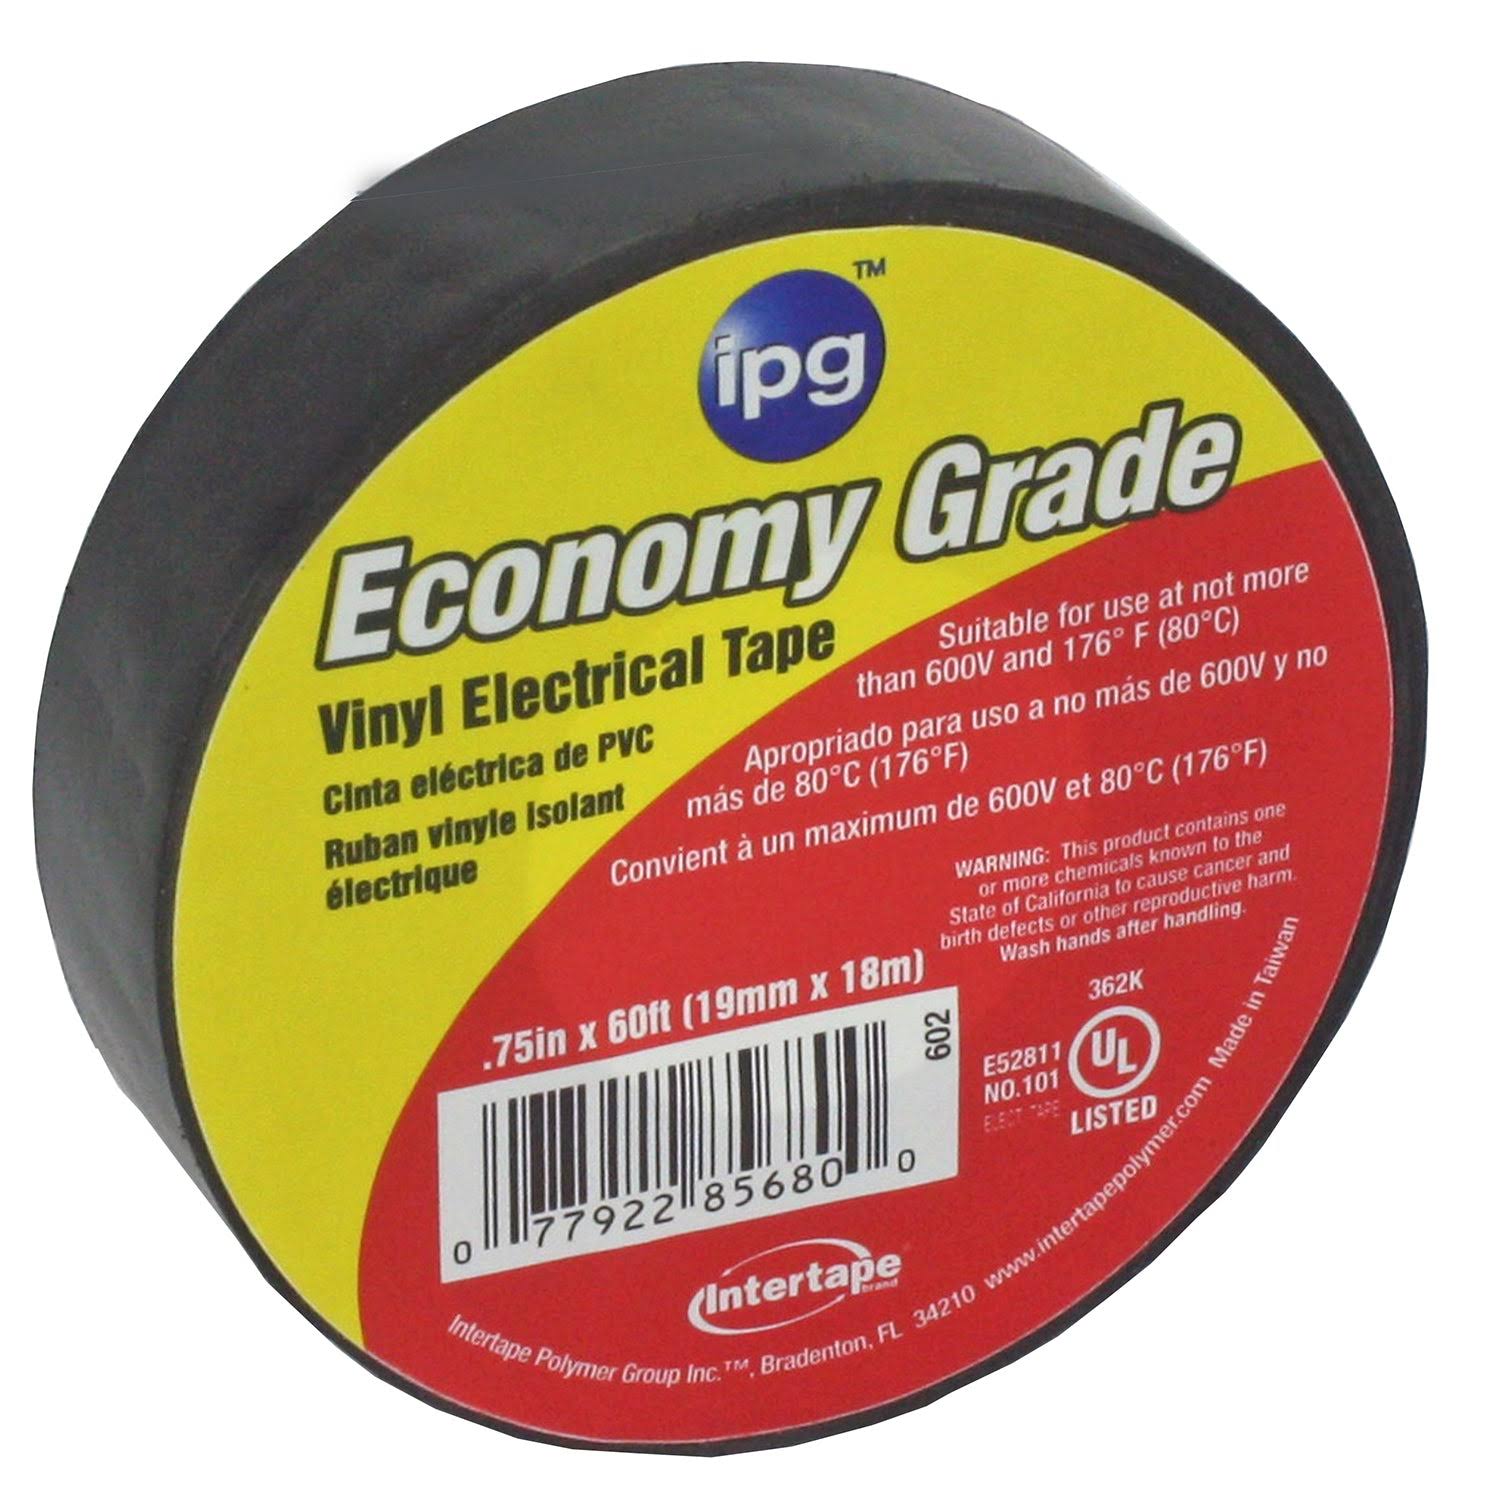 IPG Economy Grade Vinyl Electrical Tape - Black